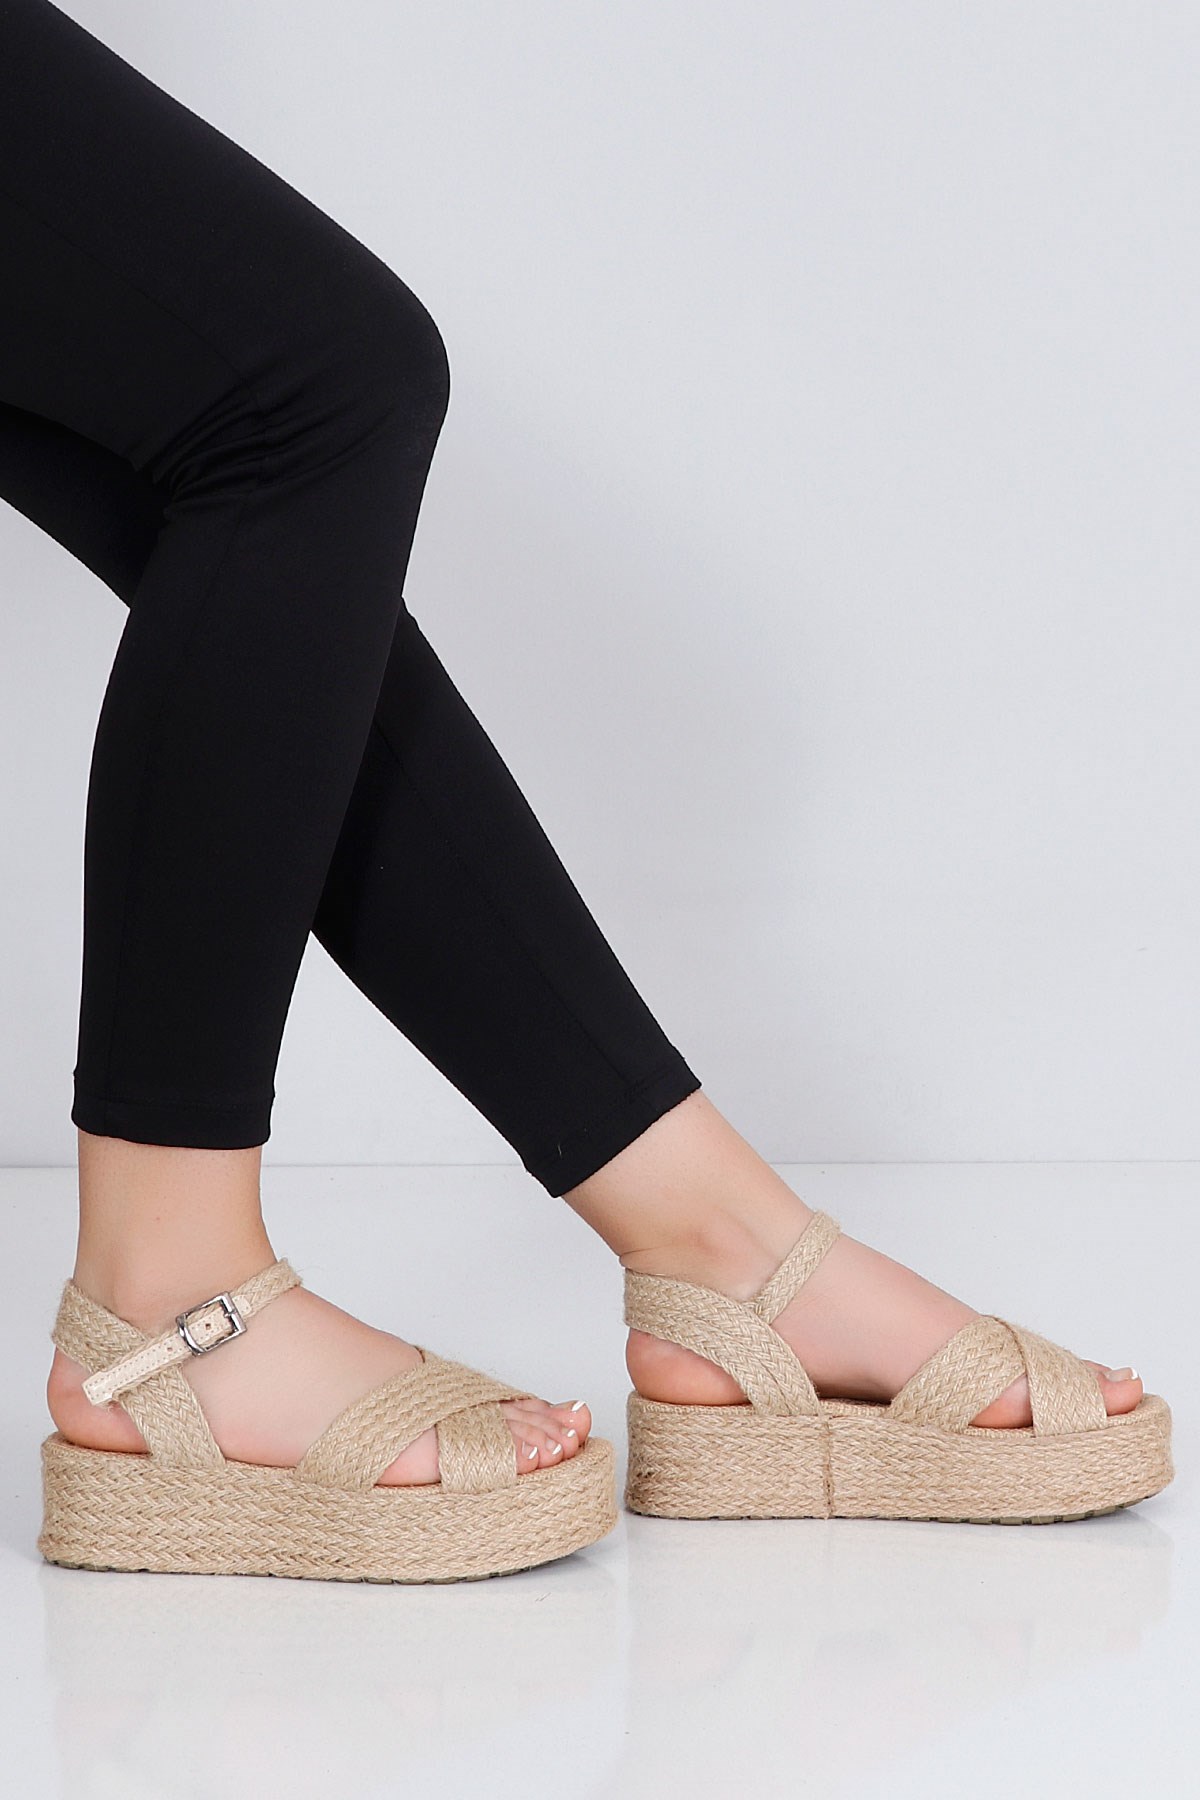 Ten keten Kalın Taban Kadın Sandalet Hasır 20-5 Fiyatı ve Modelleri